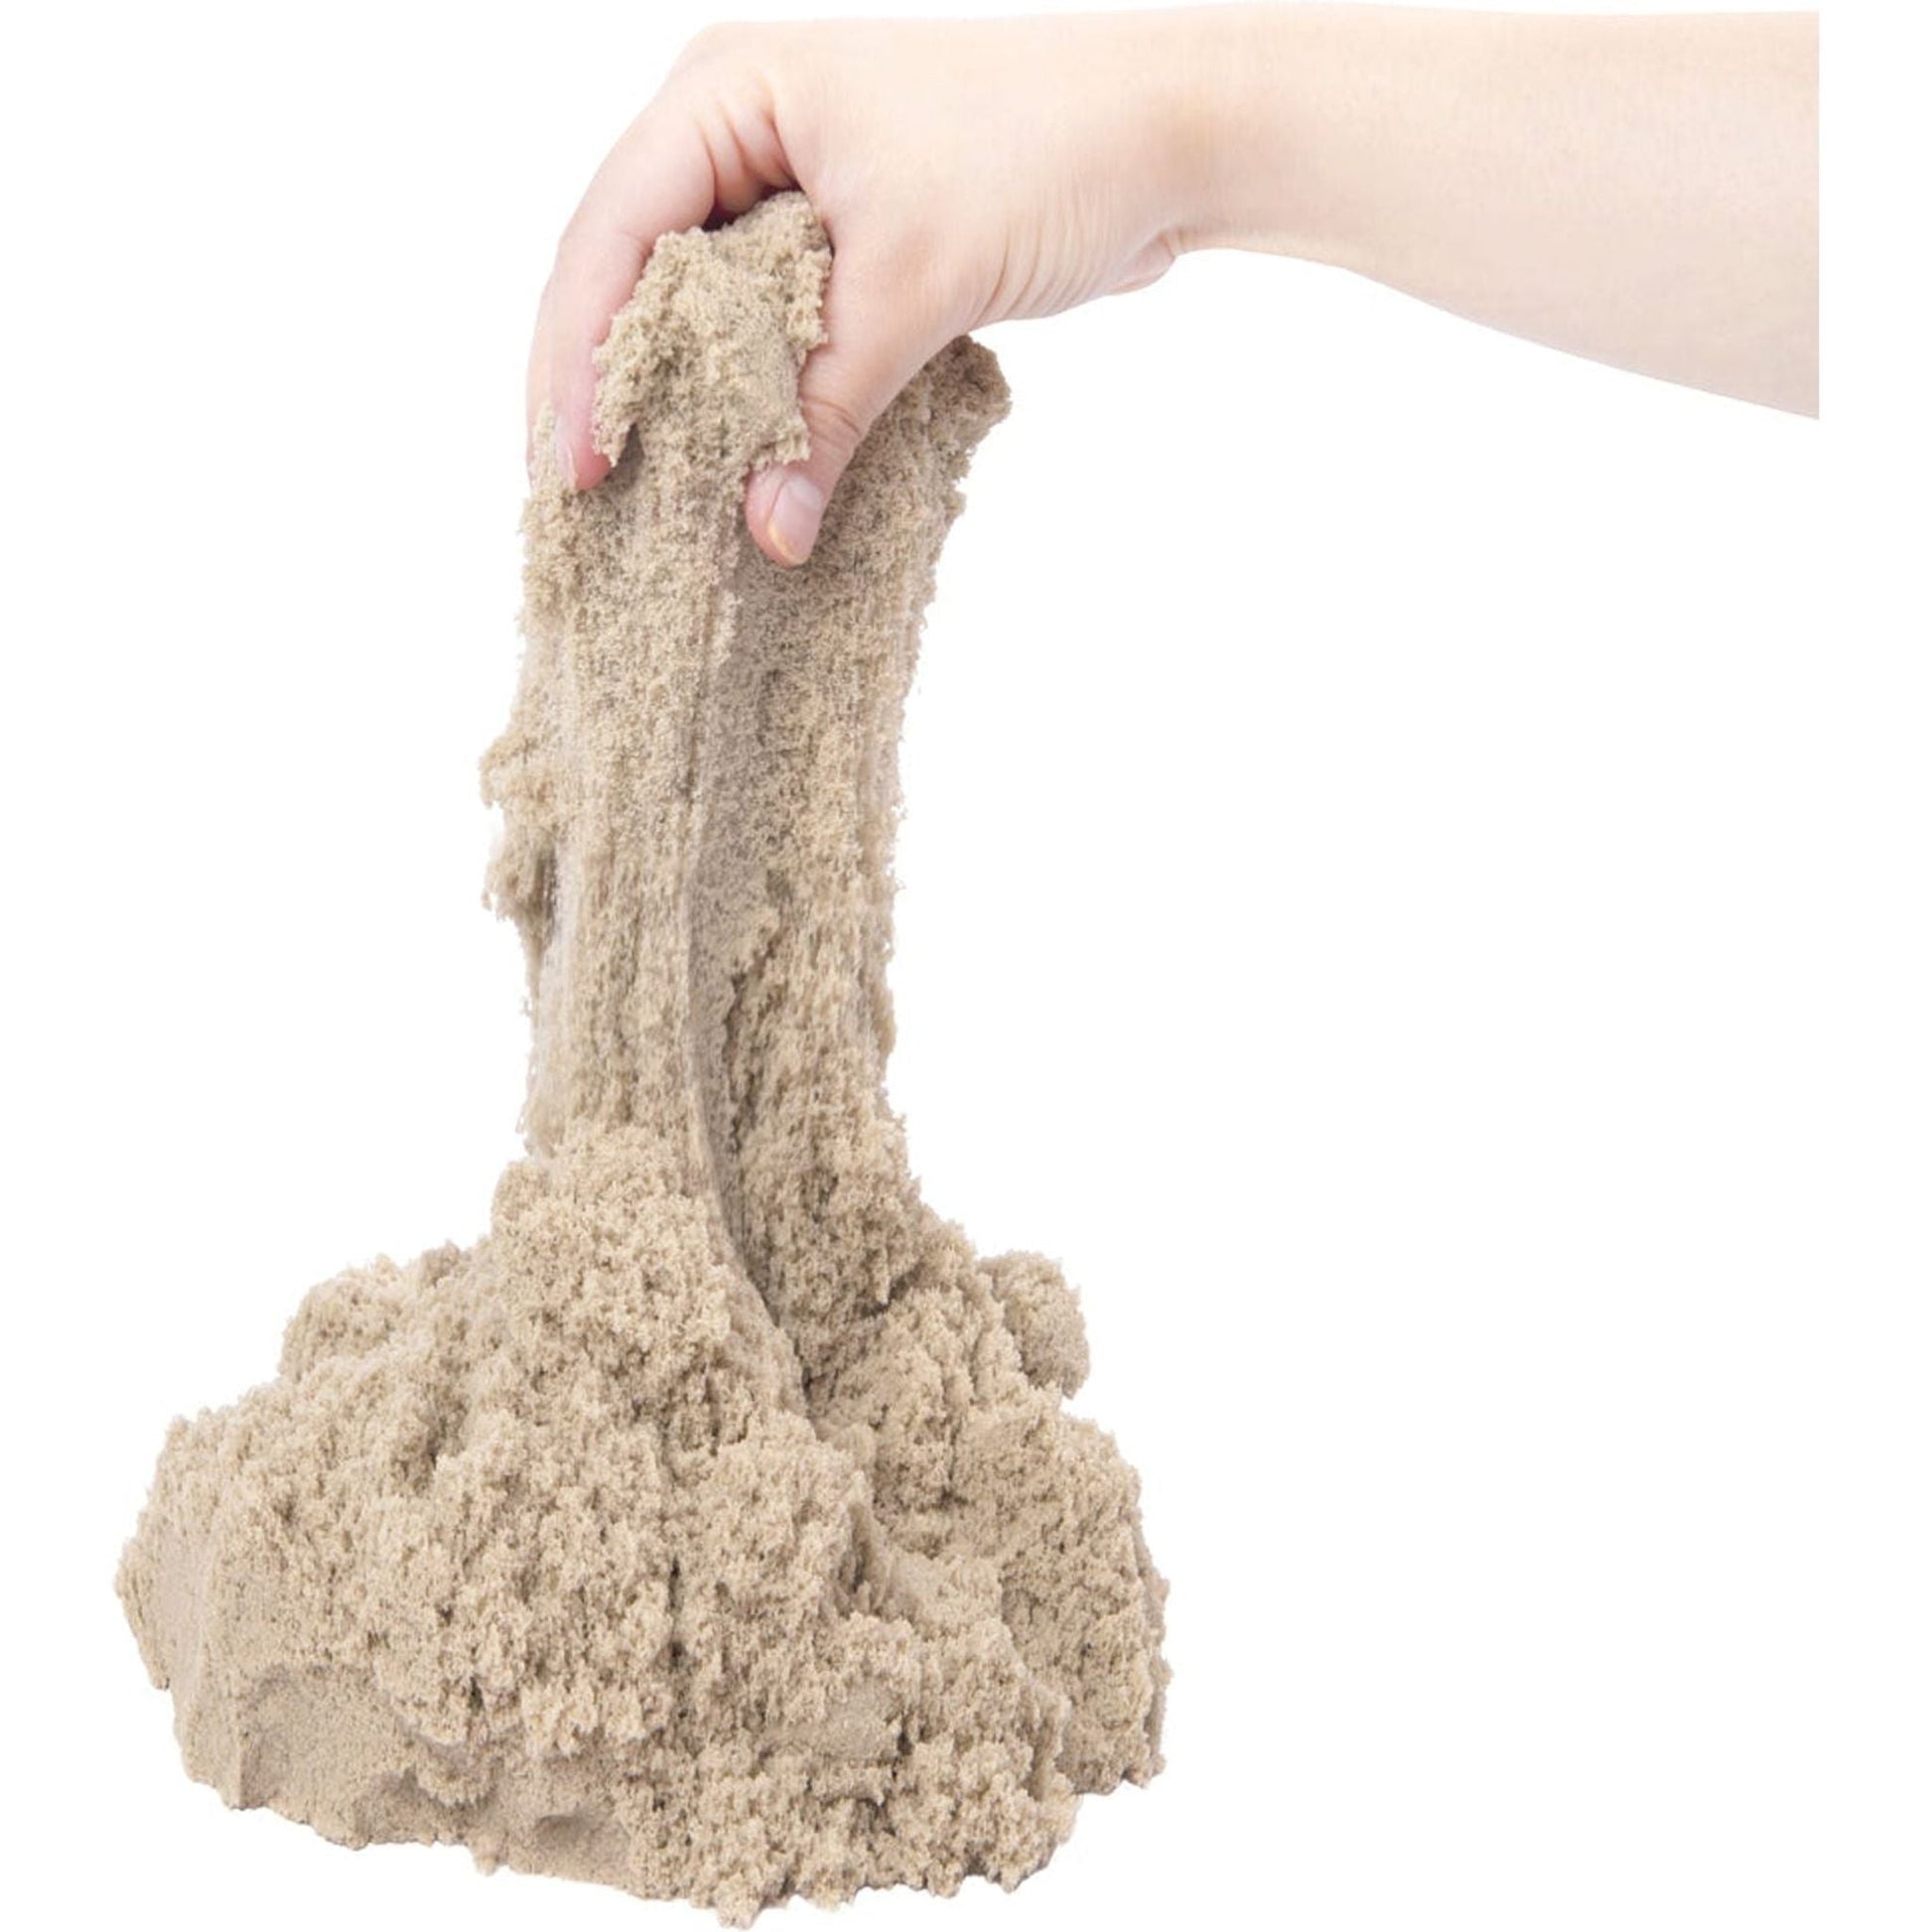 Sensory Magic Sand - 1kg